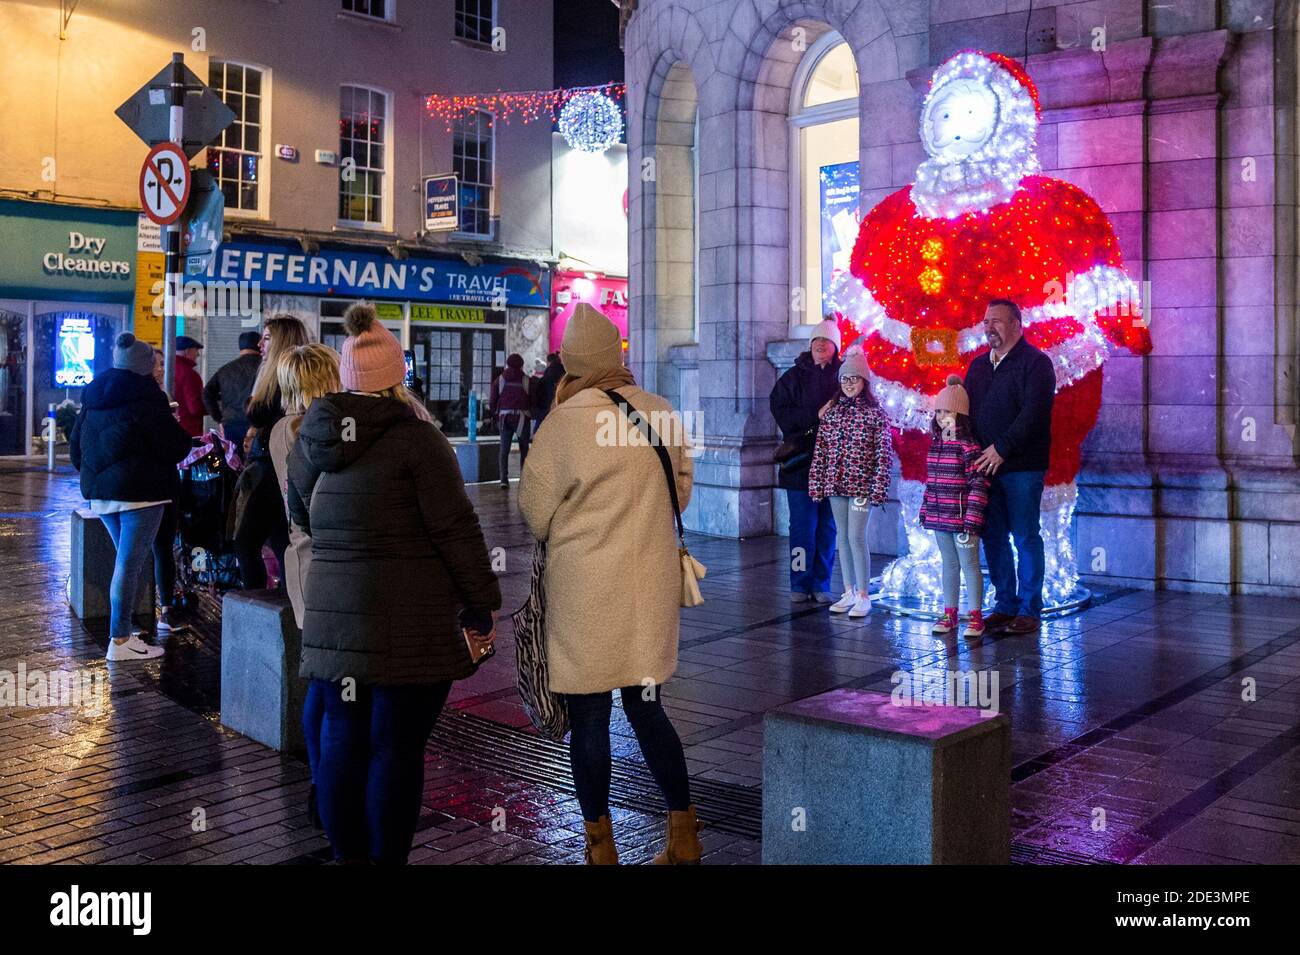 Cork, Irland. November 2020. Das Stadtzentrum von Cork war an diesem Abend sehr voll mit Familien, die sich die Weihnachtsbeleuchtung ansehen und anderen, die Getränke zum Mitnehmen kaufen. Der Weihnachtsmann bei der Post war bei Familien sehr beliebt. Quelle: AG News/Alamy Live News Stockfoto